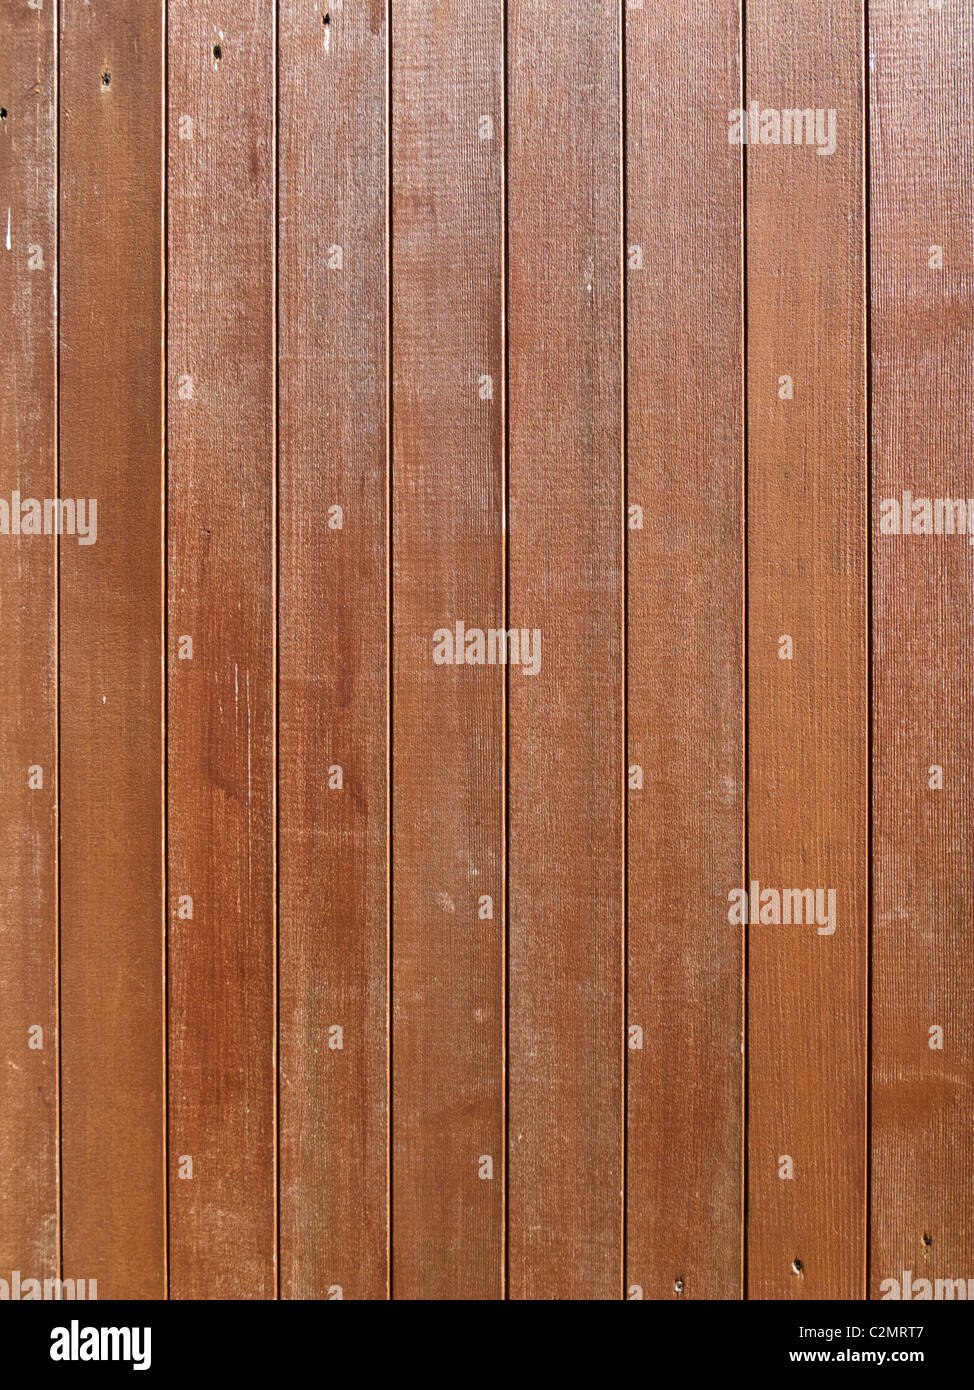 La texture du bois - panneaux de clôture en bois close up Banque D'Images